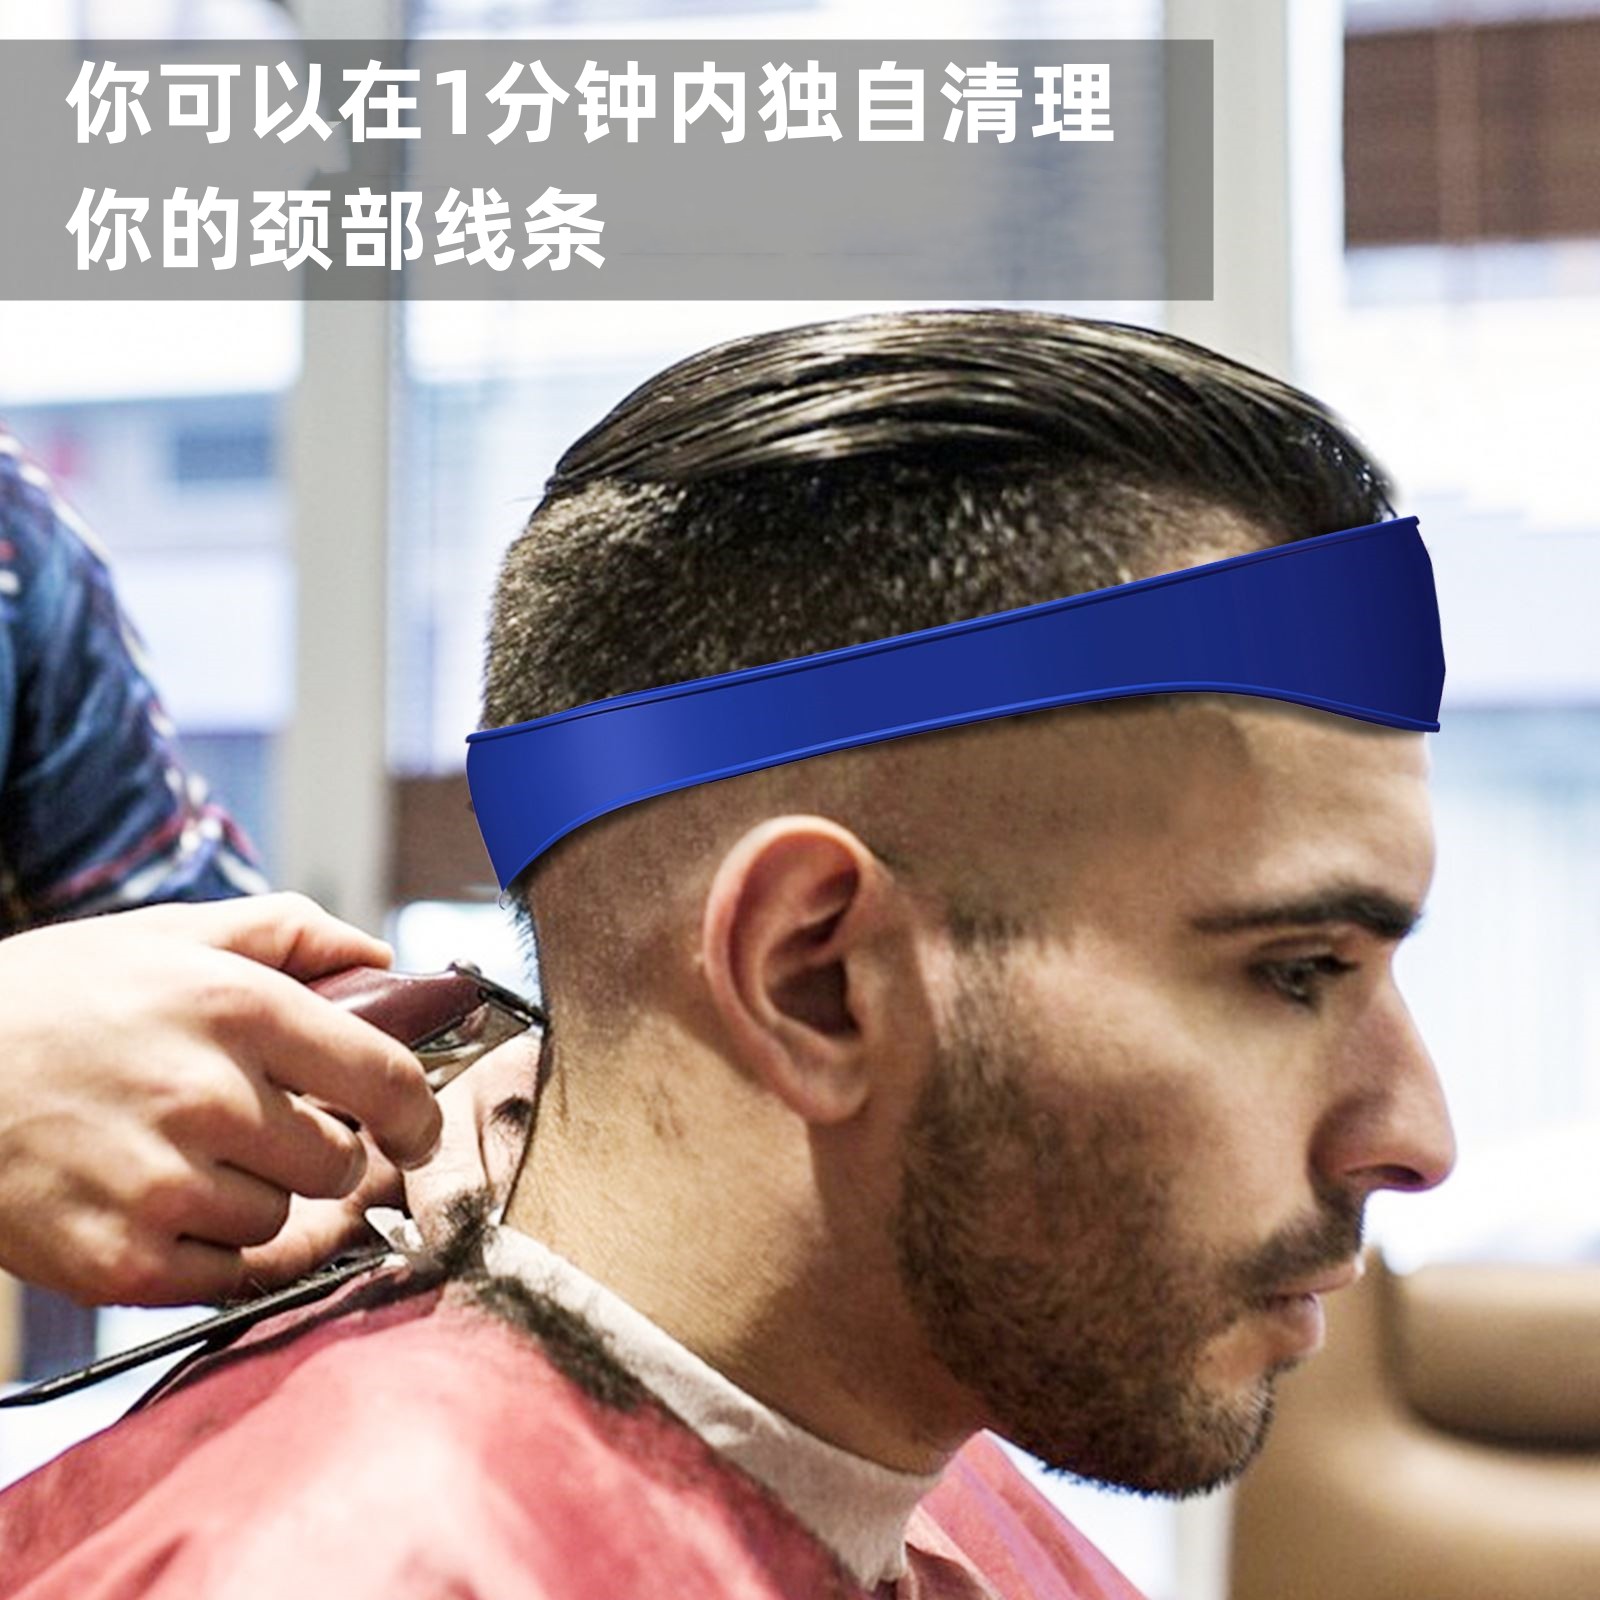 【厂家直销】男士自助理发器 DIY弧形硅胶理发带剪理发领口剃须 - 图1